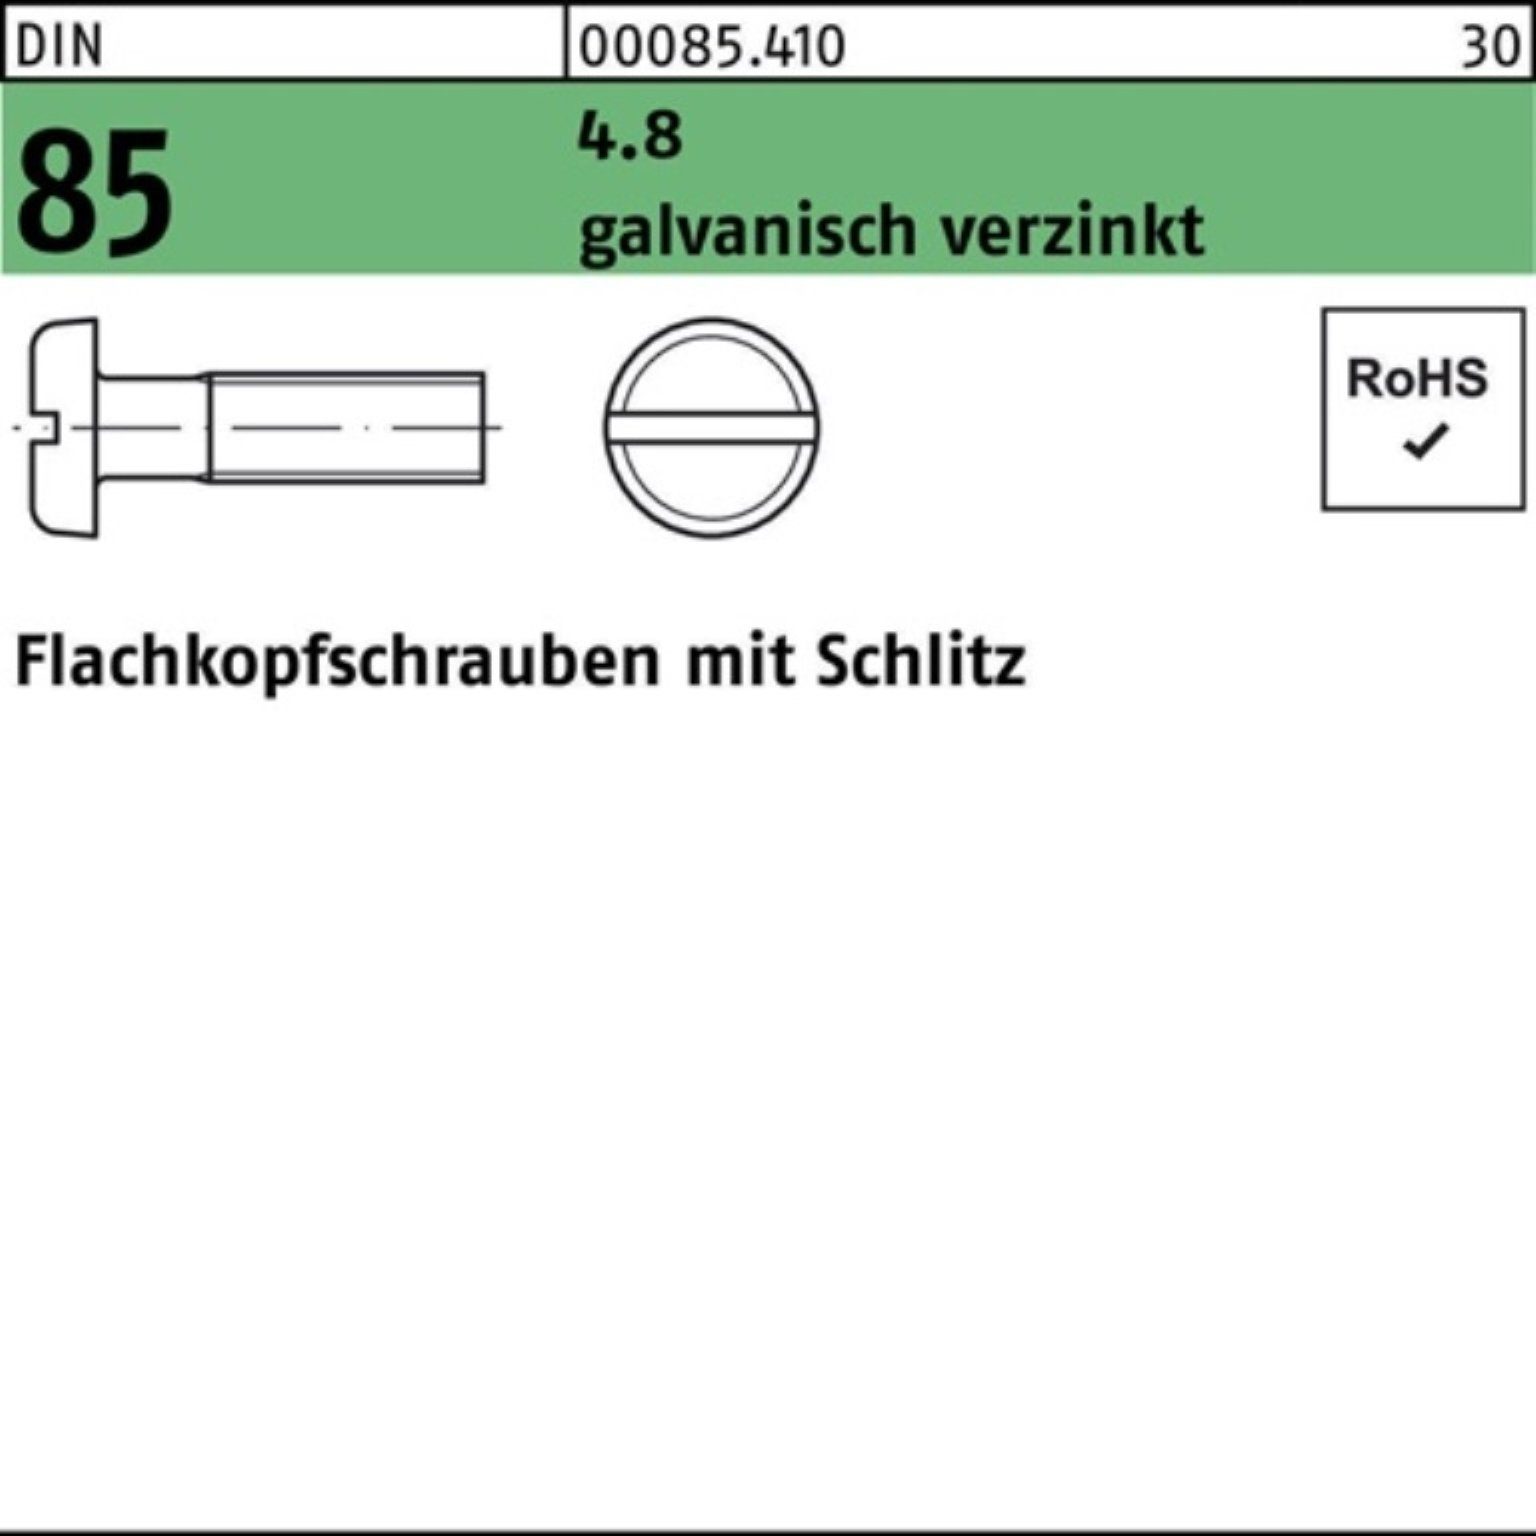 85/ISO galv.ve Reyher Schraube M5x45 1580 DIN 500er Flachkopfschraube Pack Schlitz 4.8